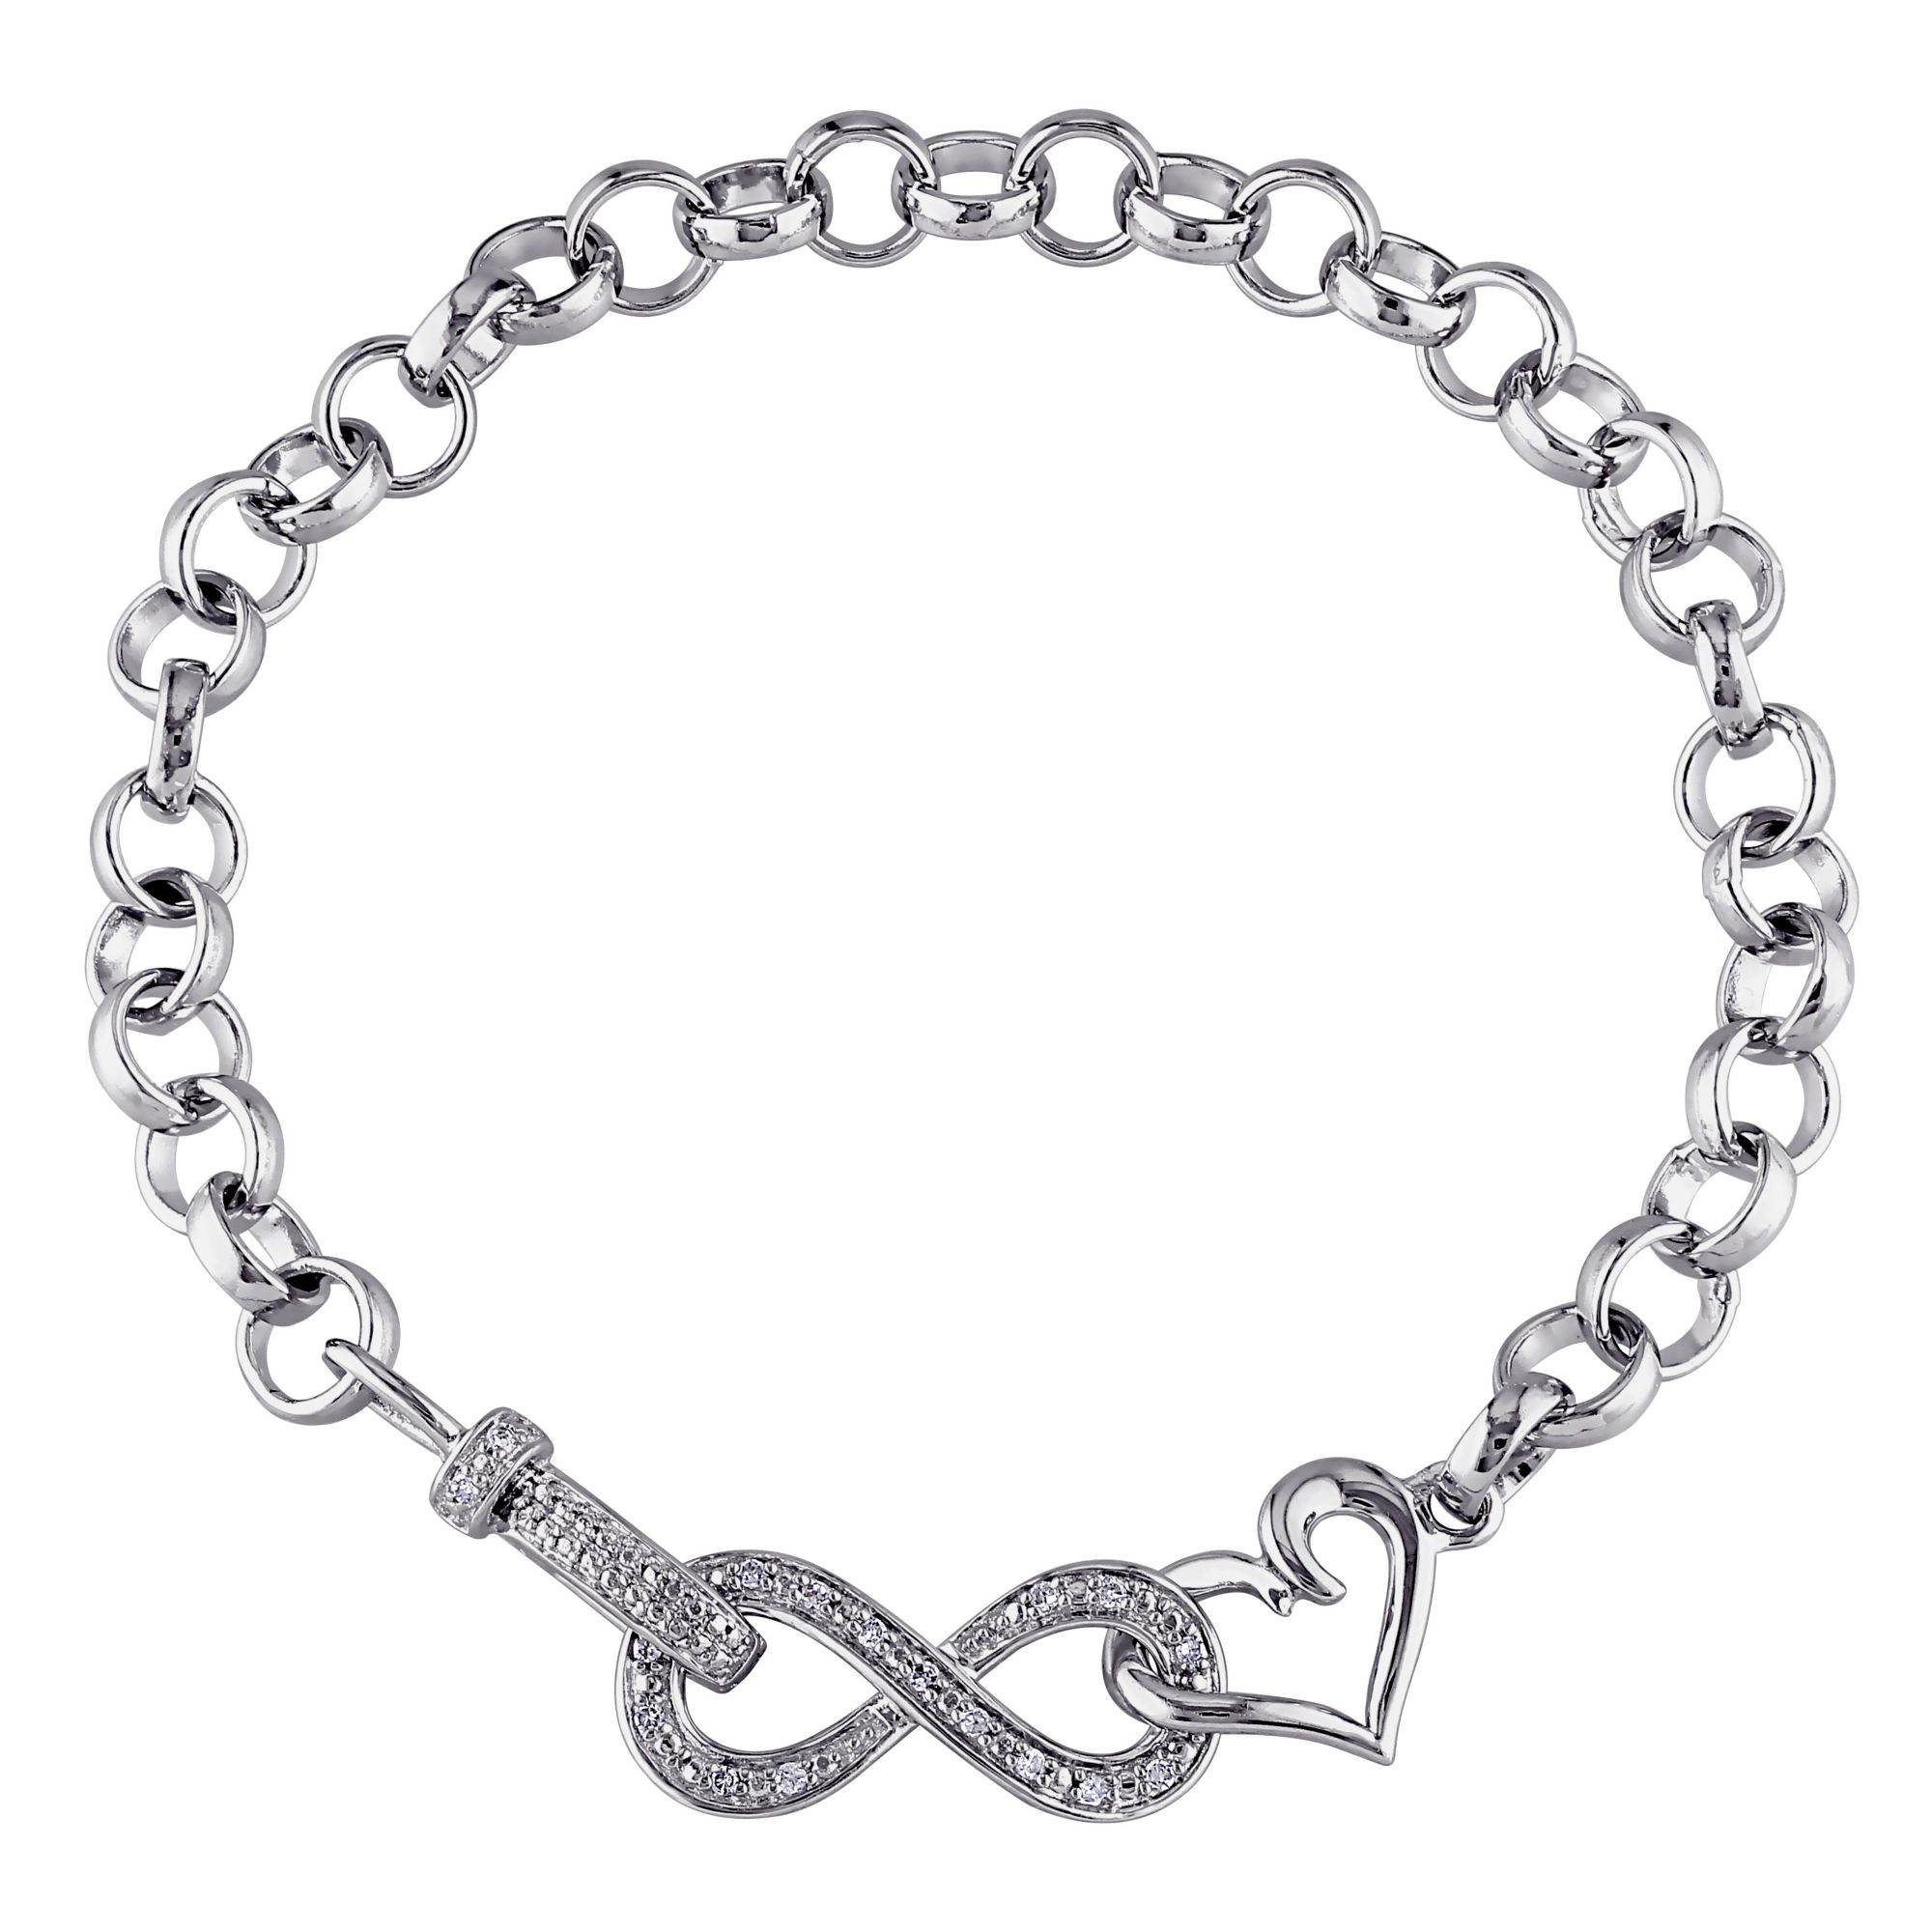 .1 ct. t.w. Diamond Infinity Heart Bracelet in Sterling Silver